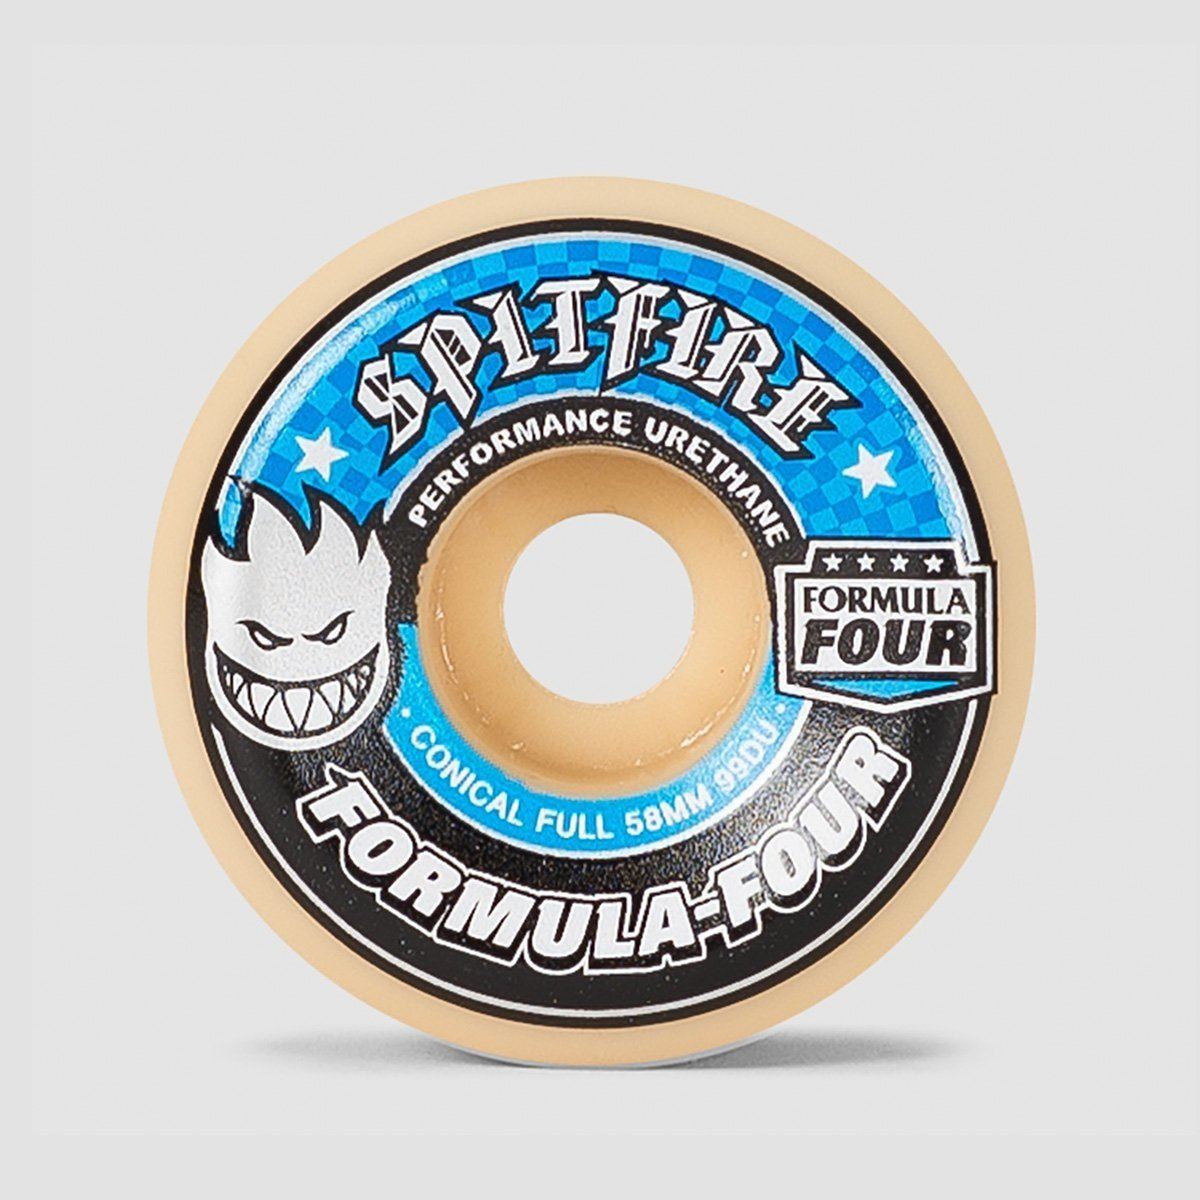 Spitfire Formula Four Conical Full 99du Skateboard Wheels Natural/Blue 58mm